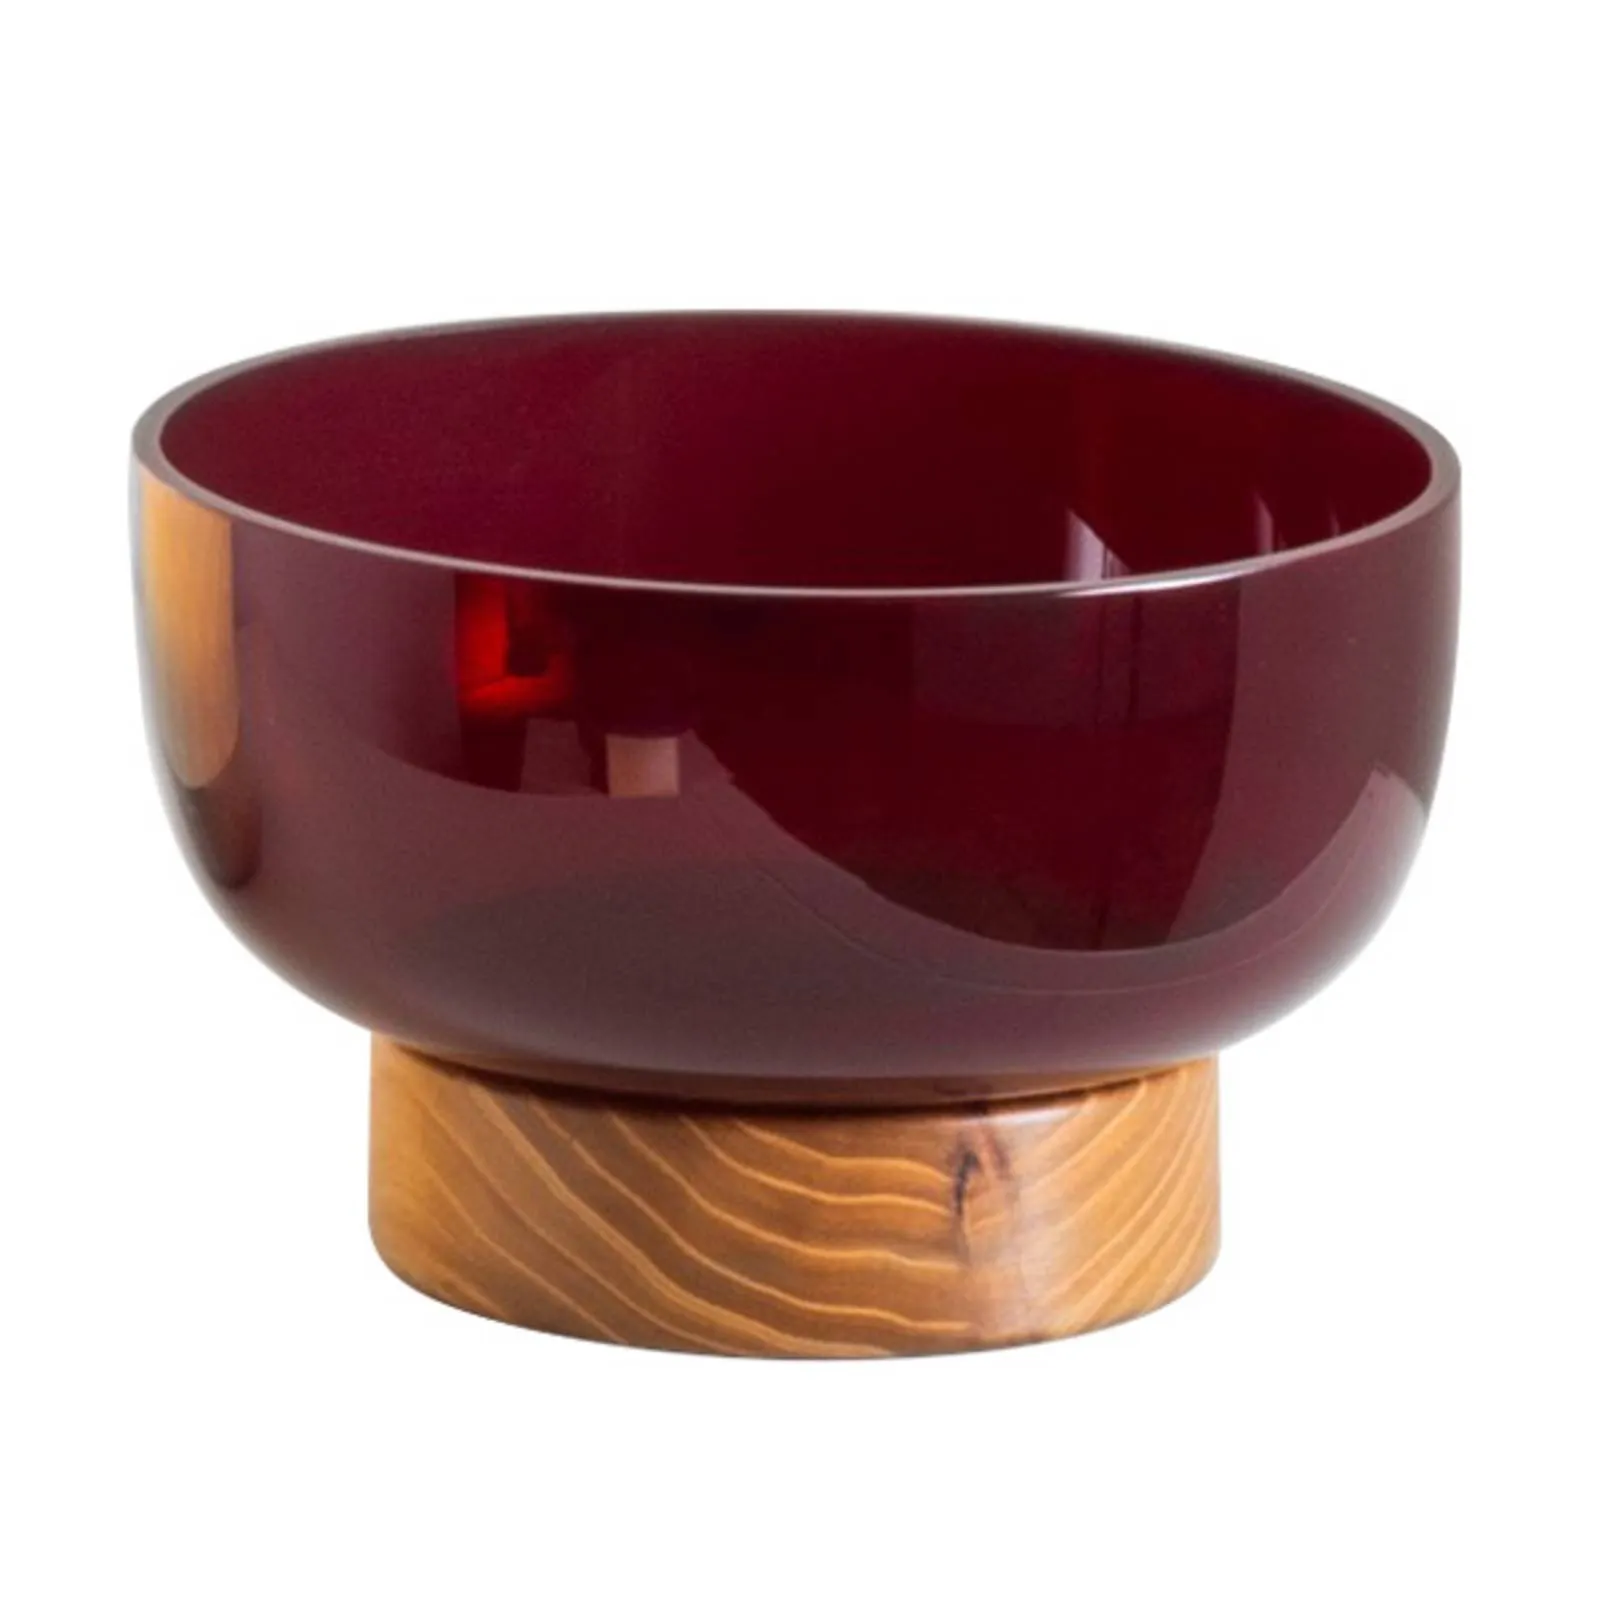  Bontà coppa di vetro base di legno, rosso